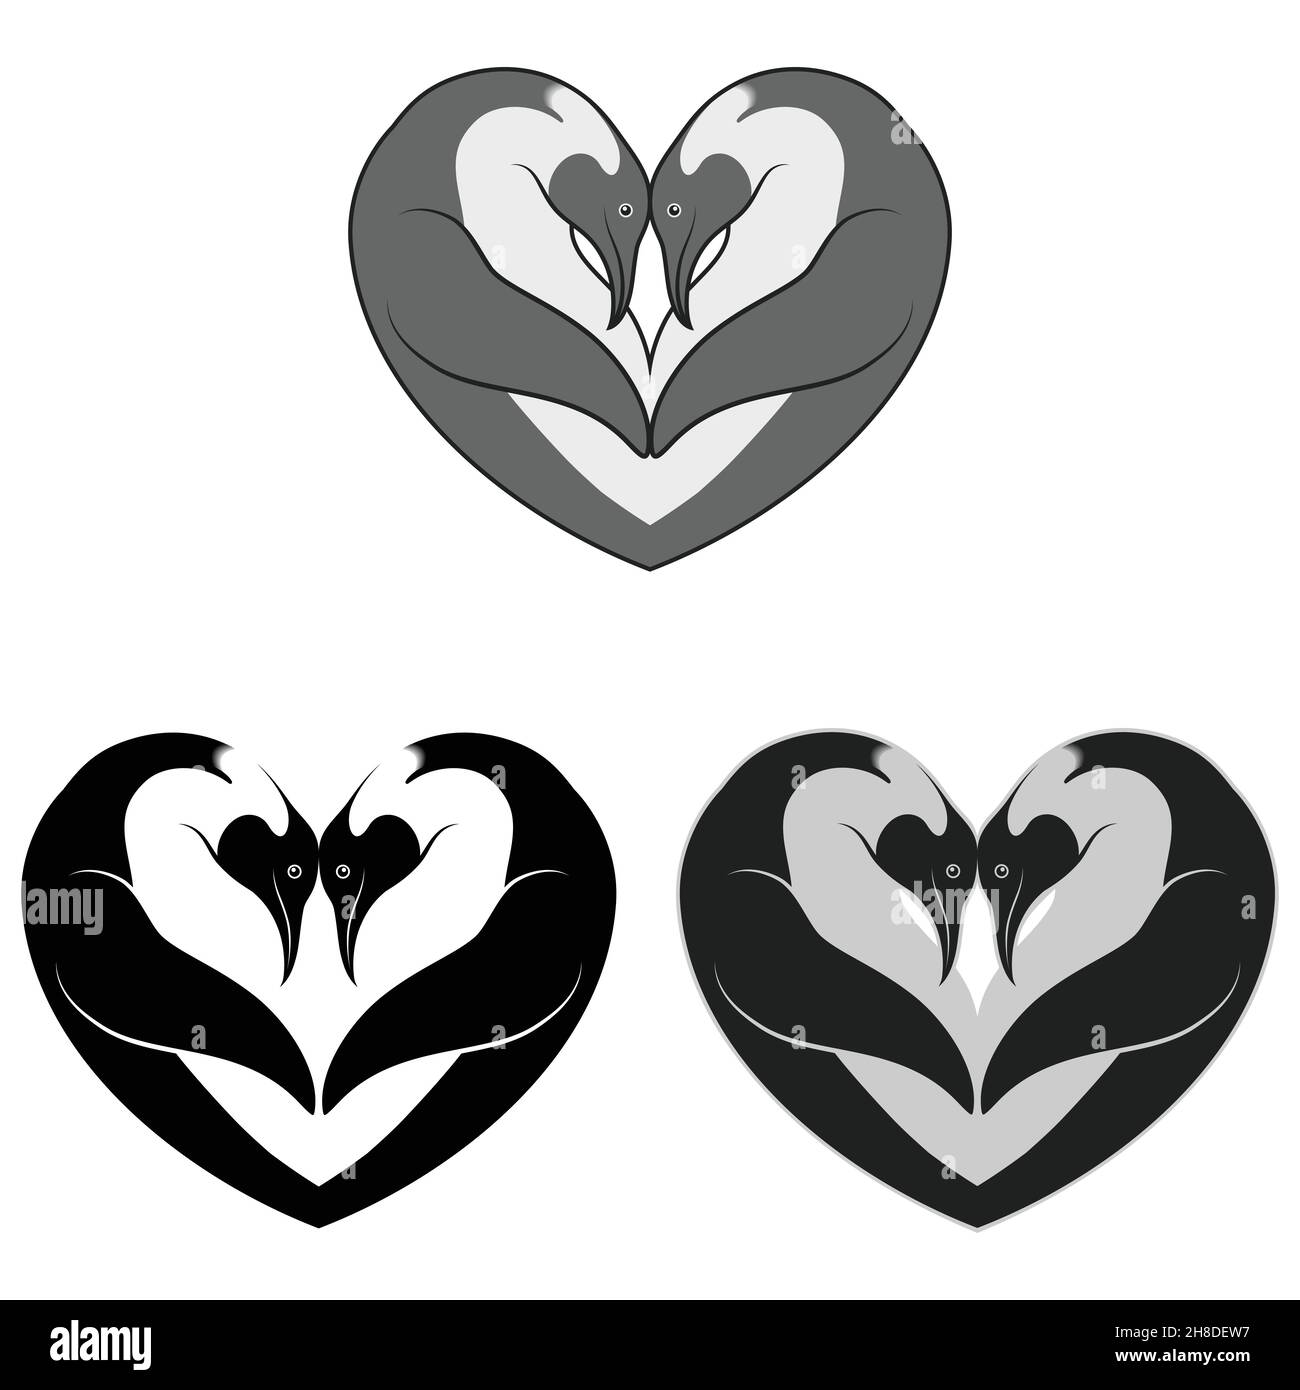 Zwei Kaiserpinguine Herz-Form-Design, Herzförmige Tiere Stock Vektor